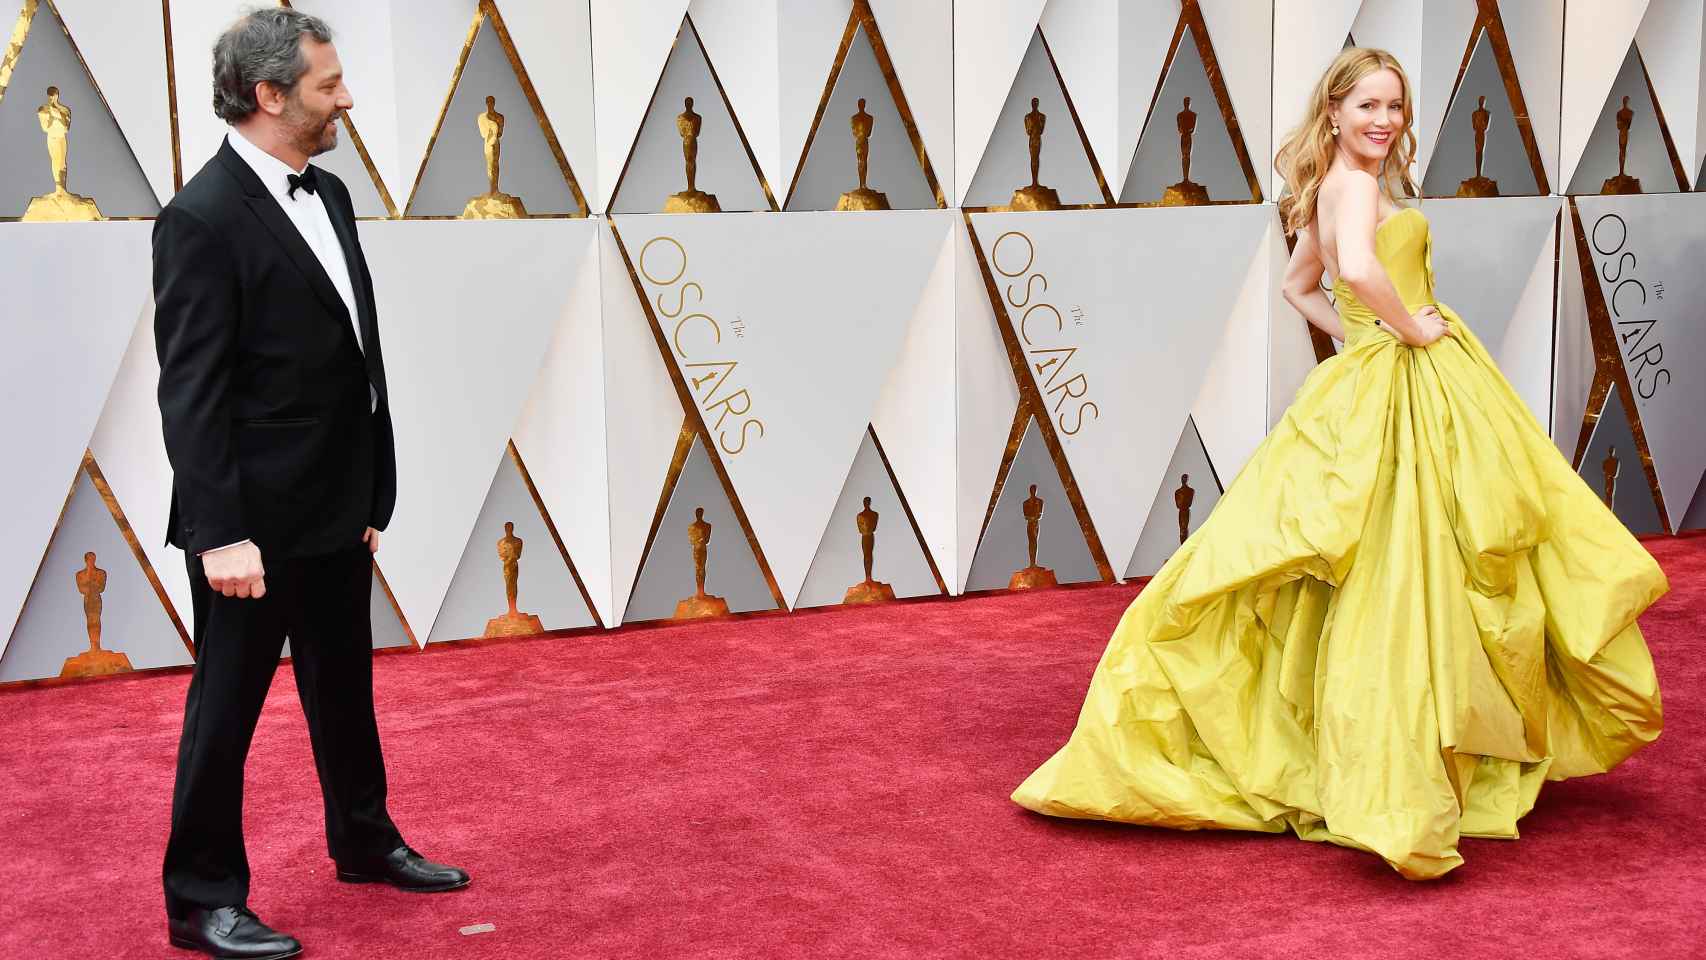 La actriz Judd Apatow llegando a la Gala de los Oscar 2017 | Foto: Getty Images.